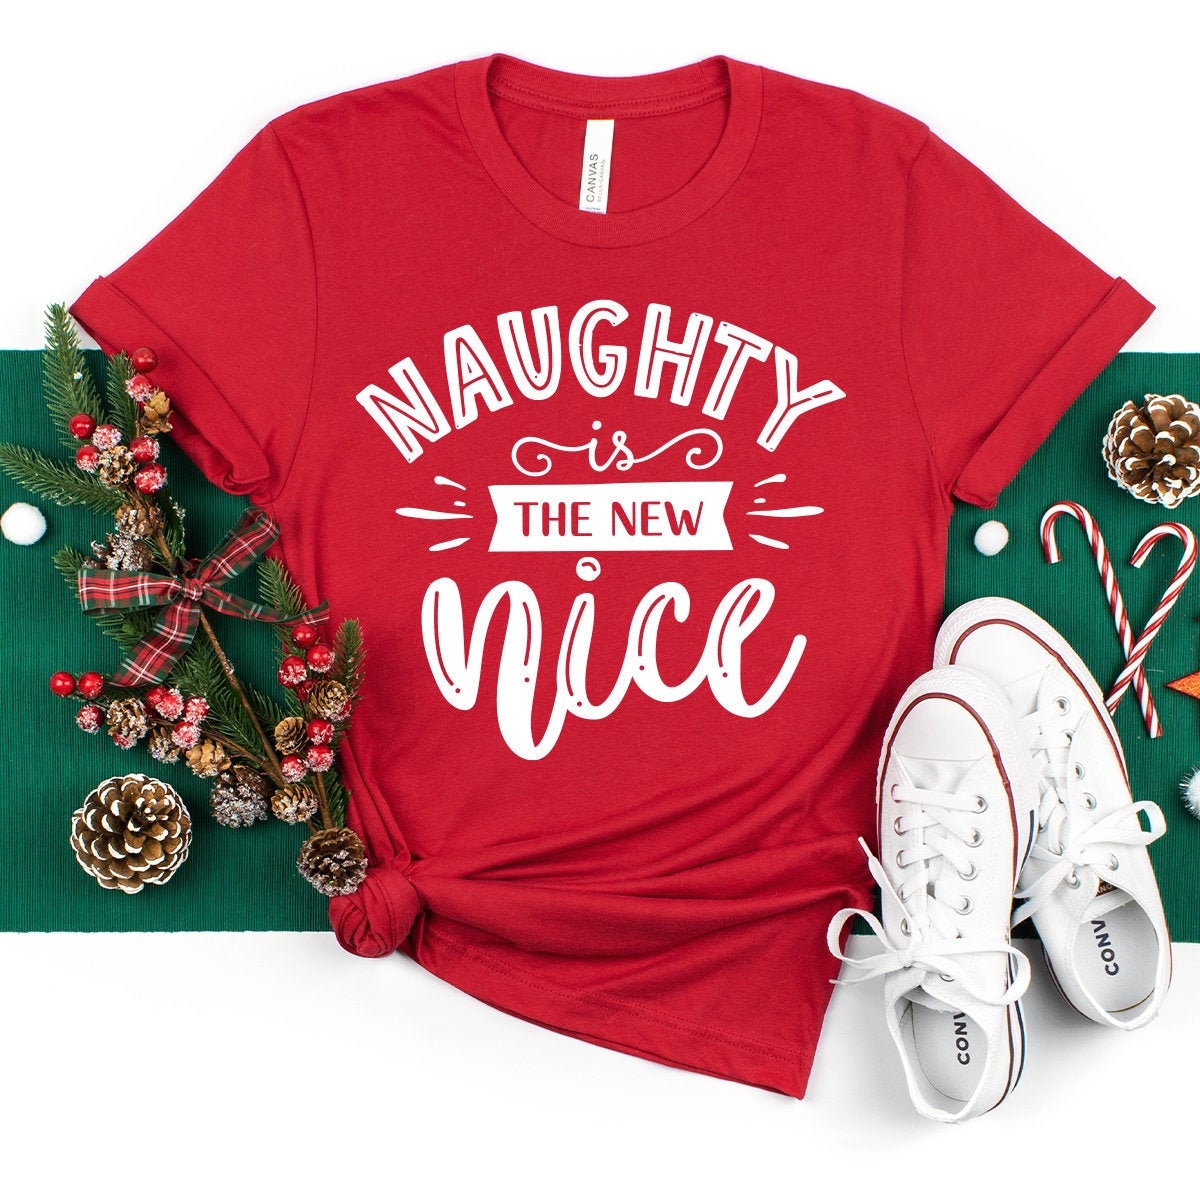 Christmas T-Shirt, Naughty Christmas Shirt, Christmas Holiday Shirt, Holiday Gift Shirt, Christmas Party Shirt, Naughty Is The New Nice Tee - Fastdeliverytees.com